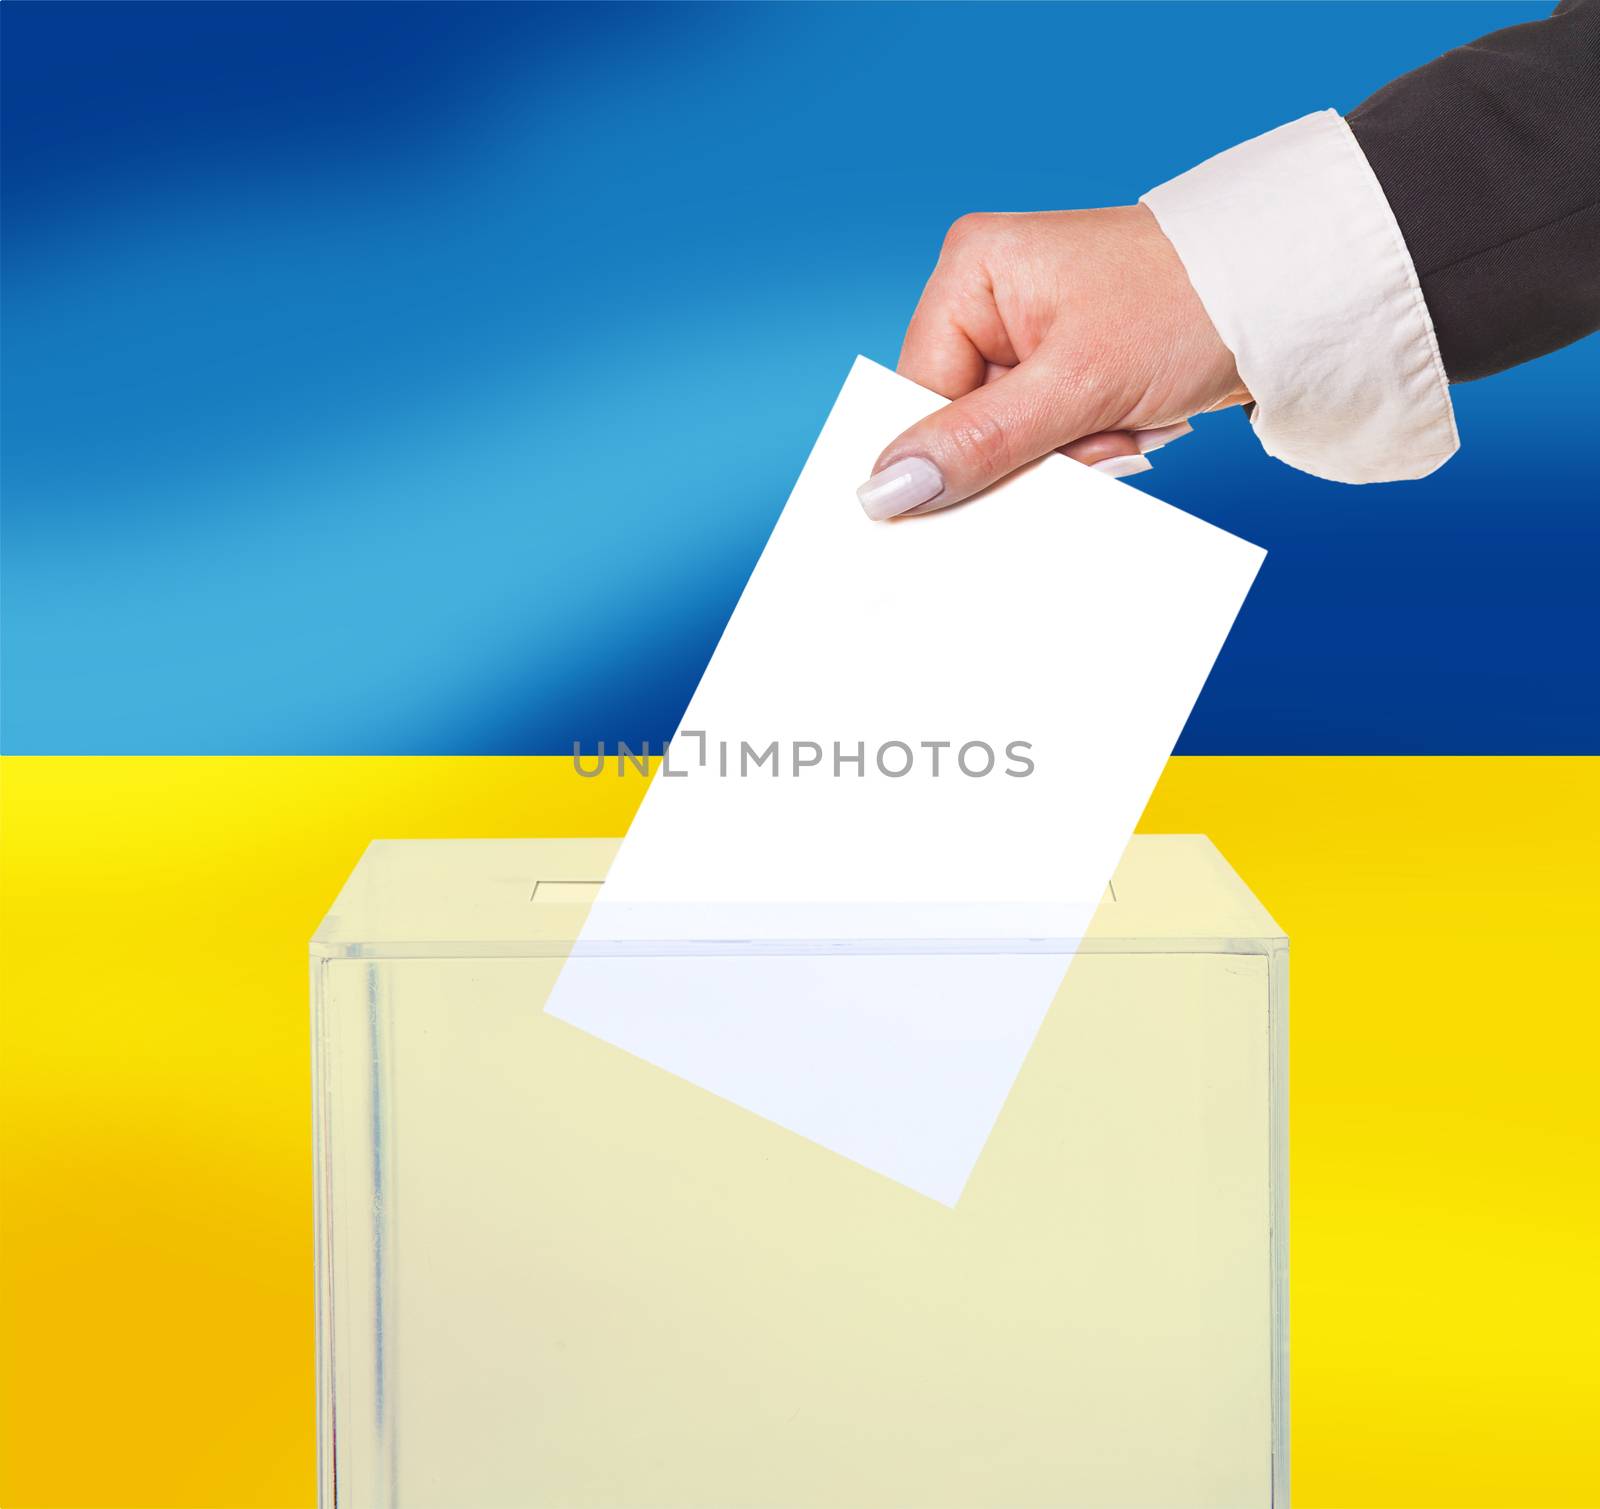 electoral vote by ballot, under the Ukraine flag